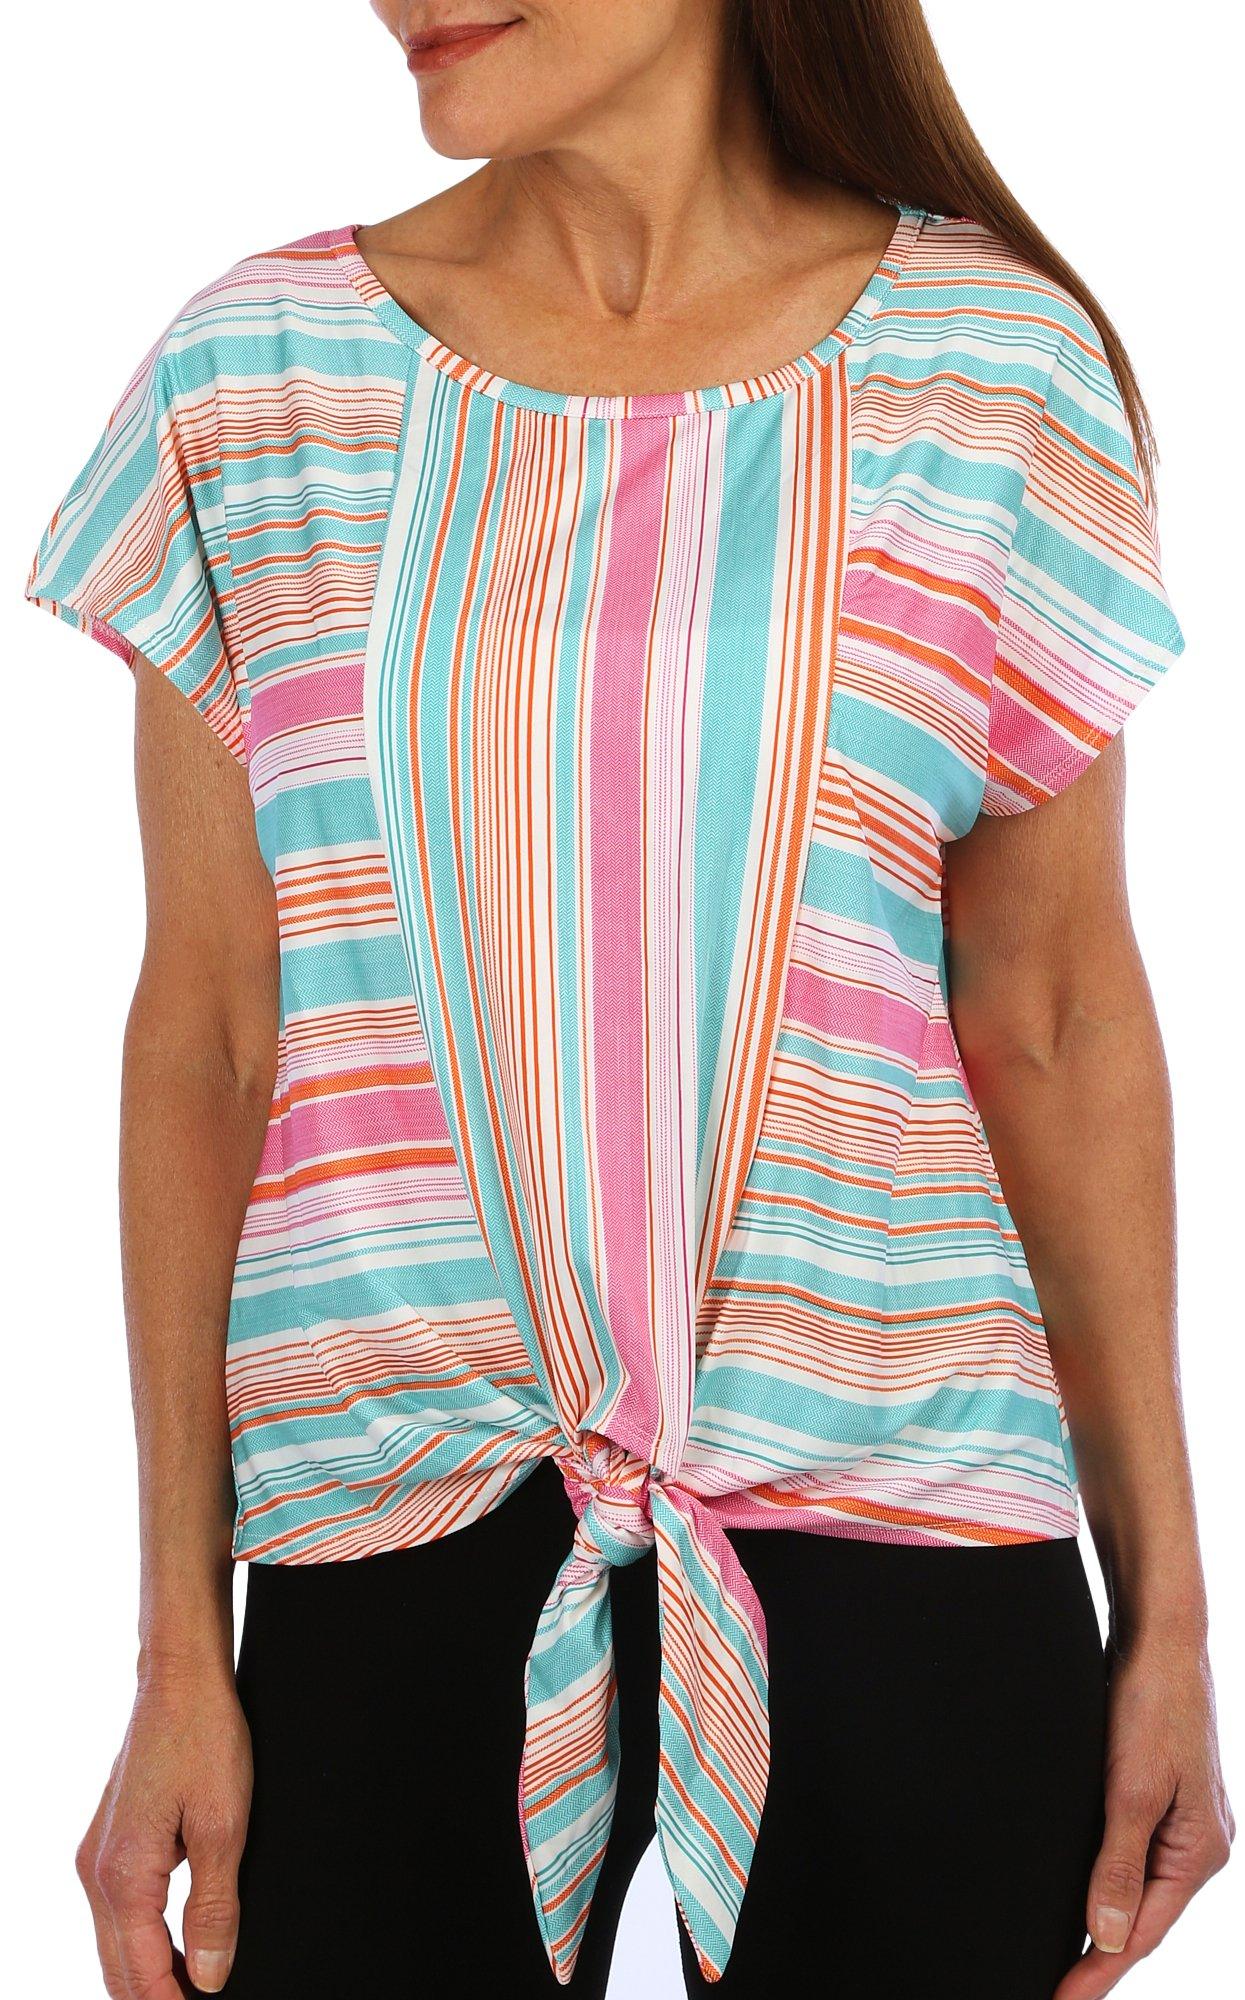 Women's Stripe Print Tie Front Top